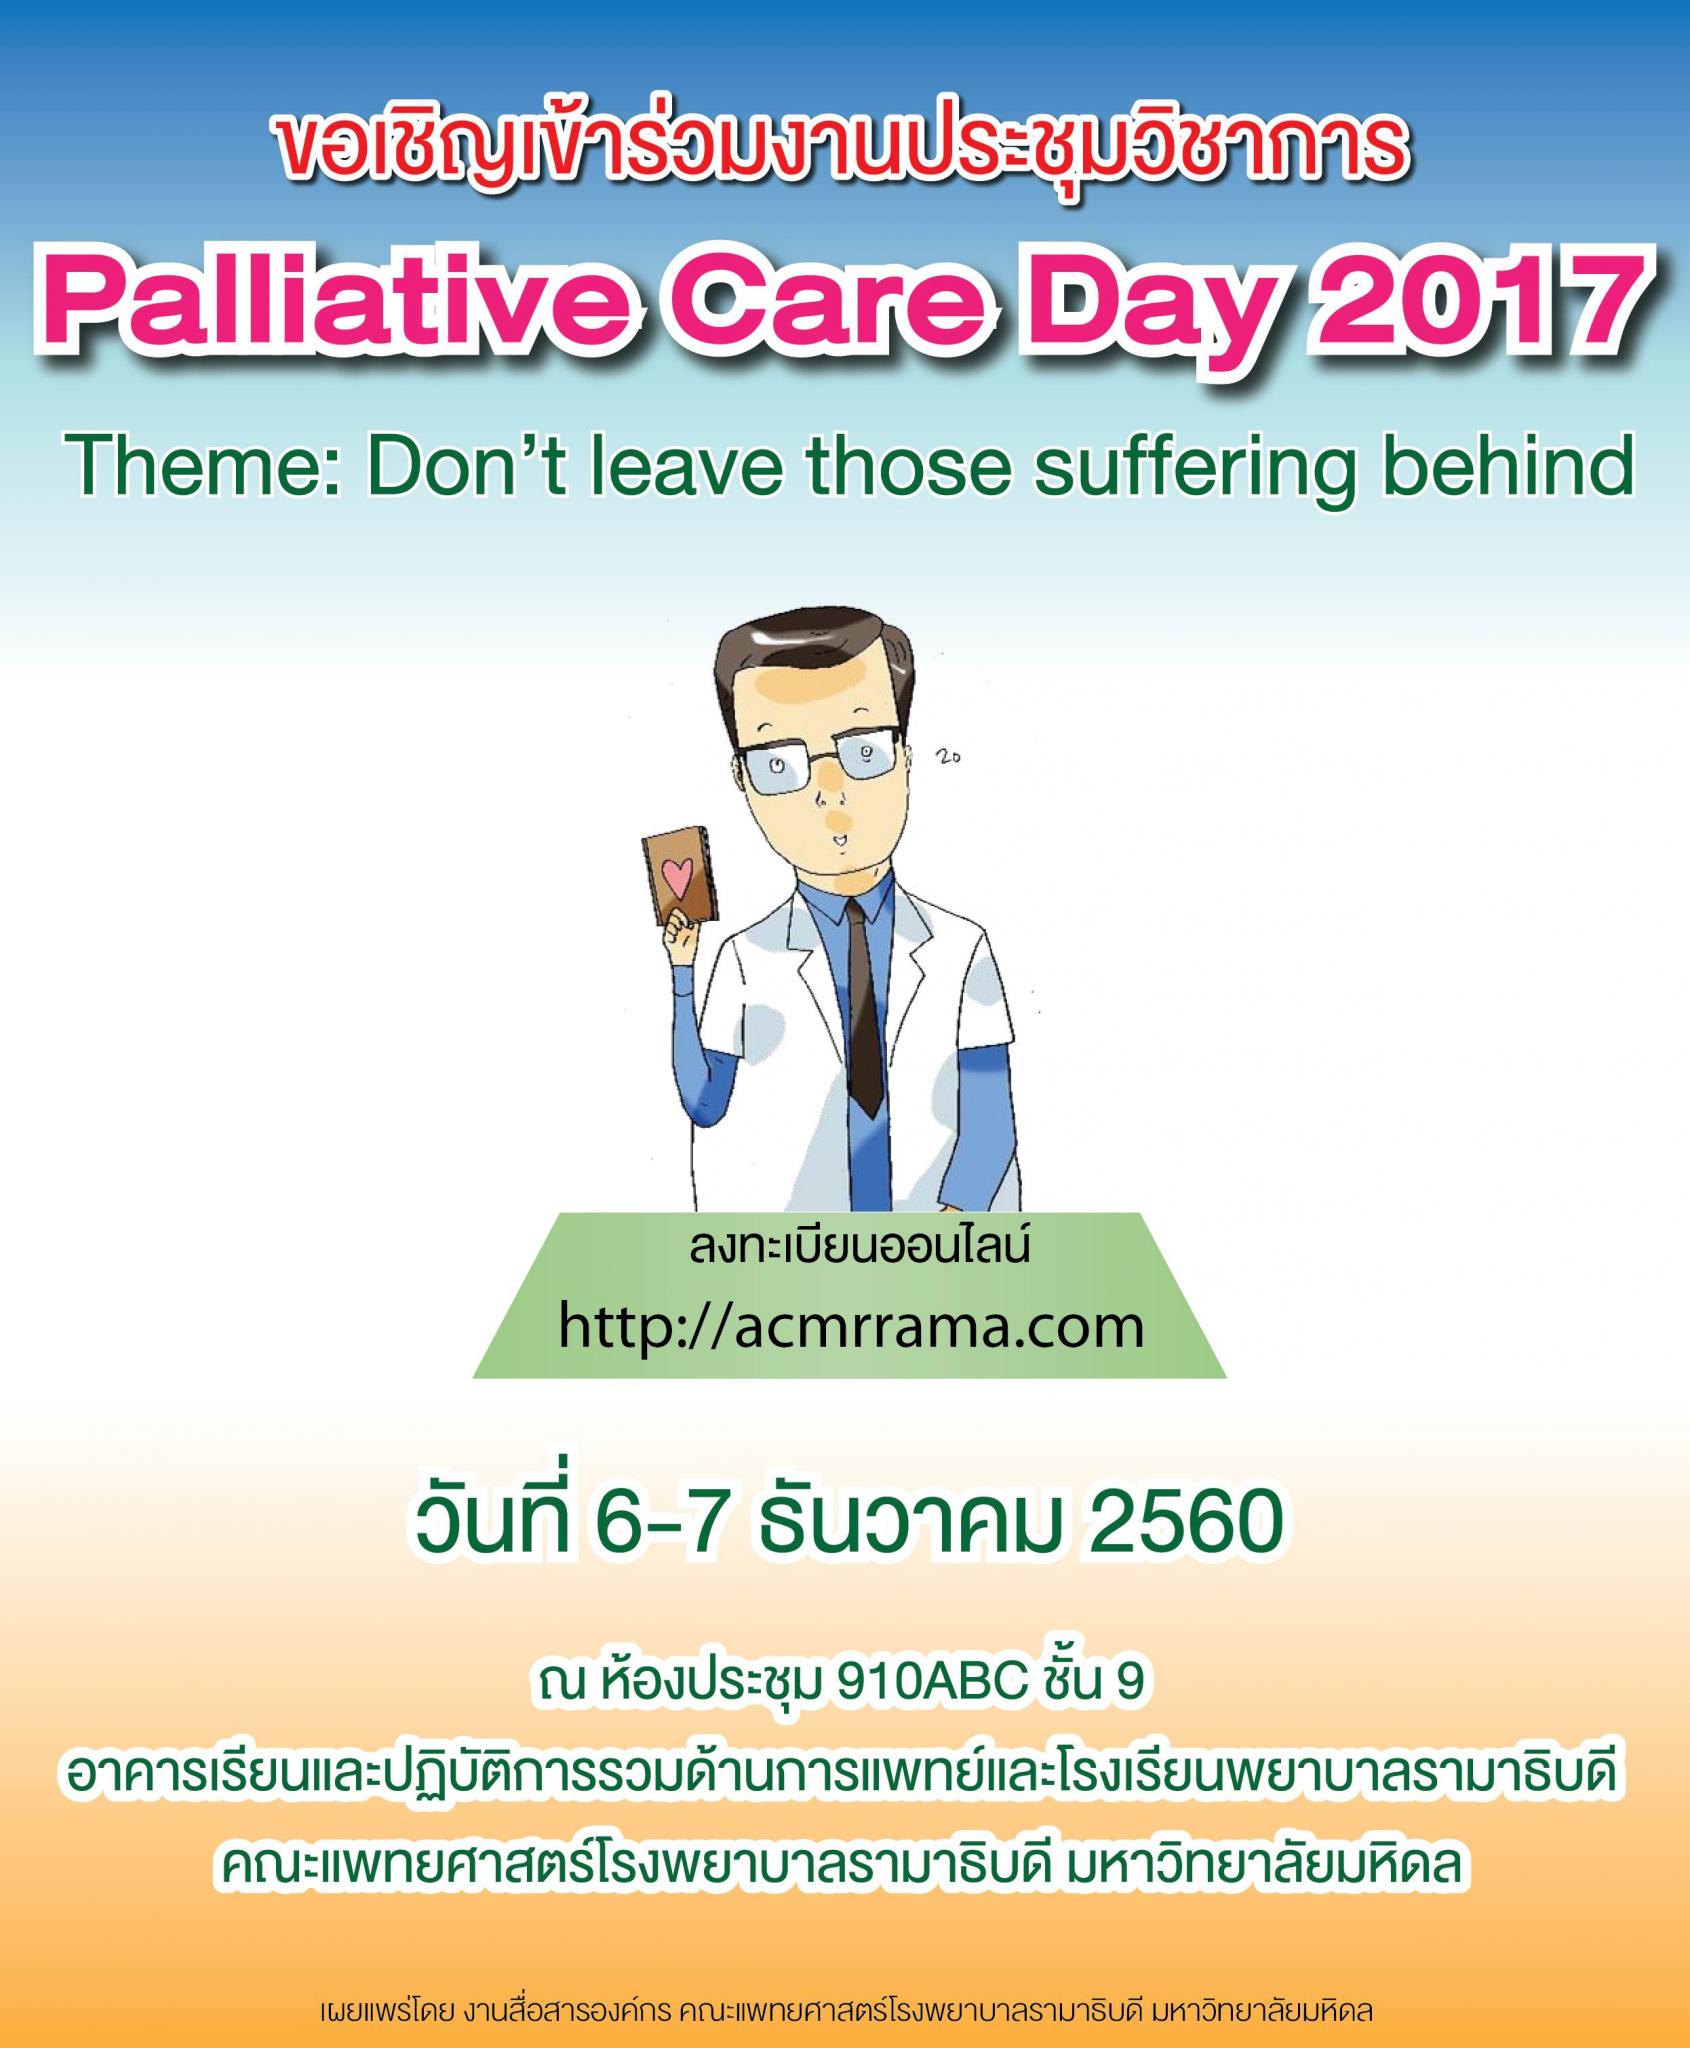 ขอเชิญร่วมประชุมวิชาการ Palliative Care Day 2017